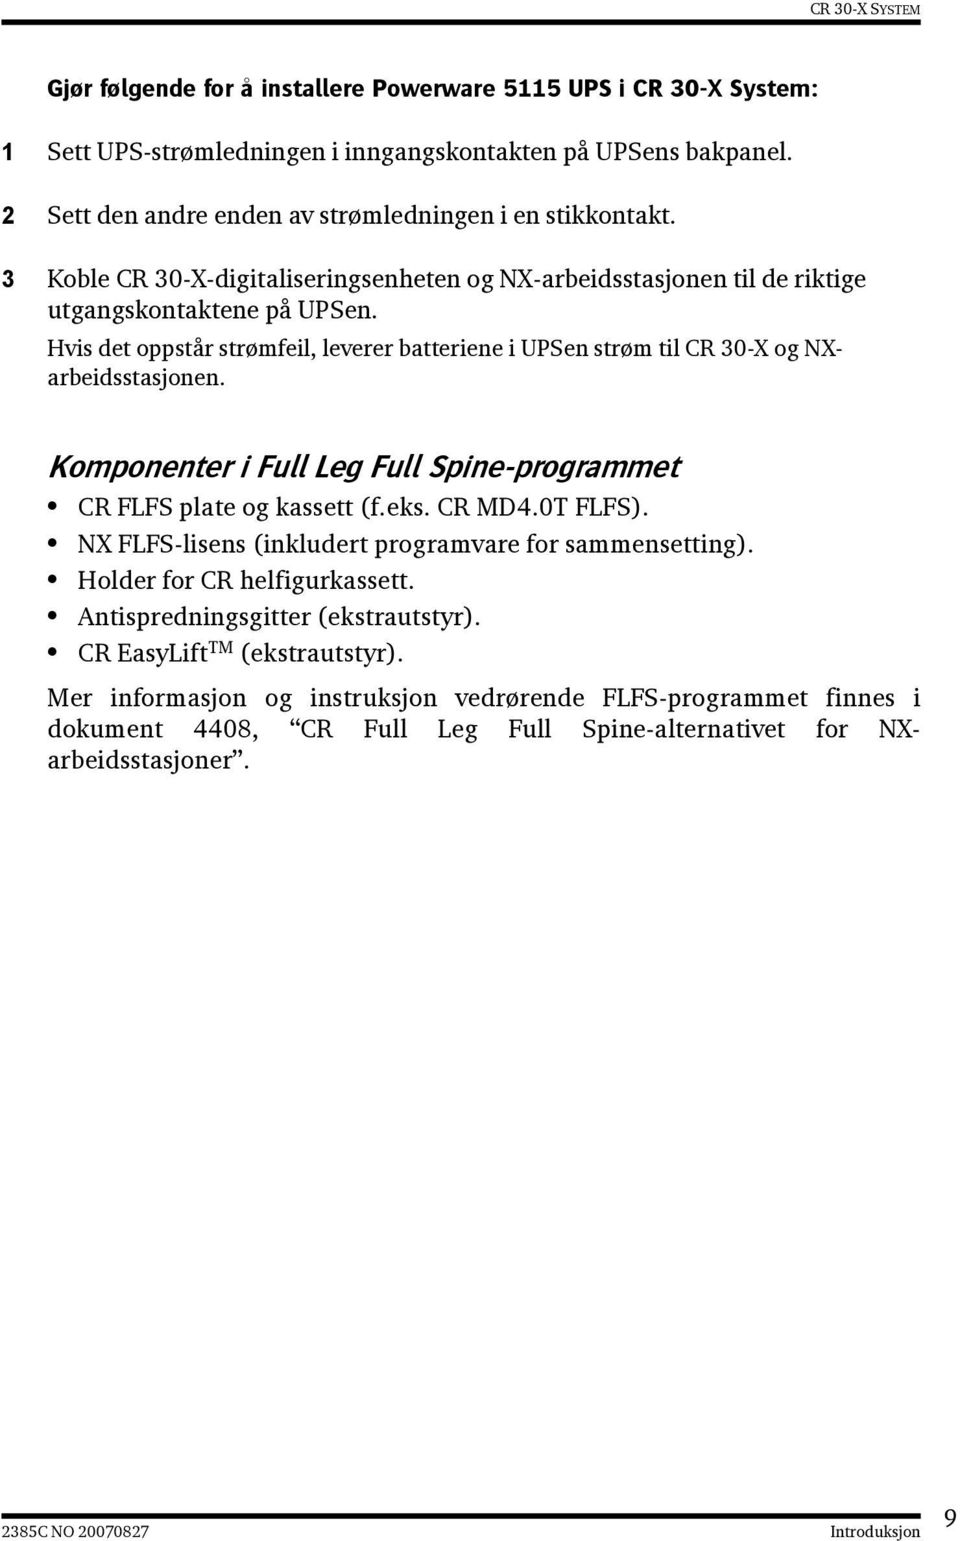 Komponenter i Full Leg Full Spine-programmet CR FLFS plate og kassett (f.eks. CR MD4.0T FLFS). NX FLFS-lisens (inkludert programvare for sammensetting). Holder for CR helfigurkassett.